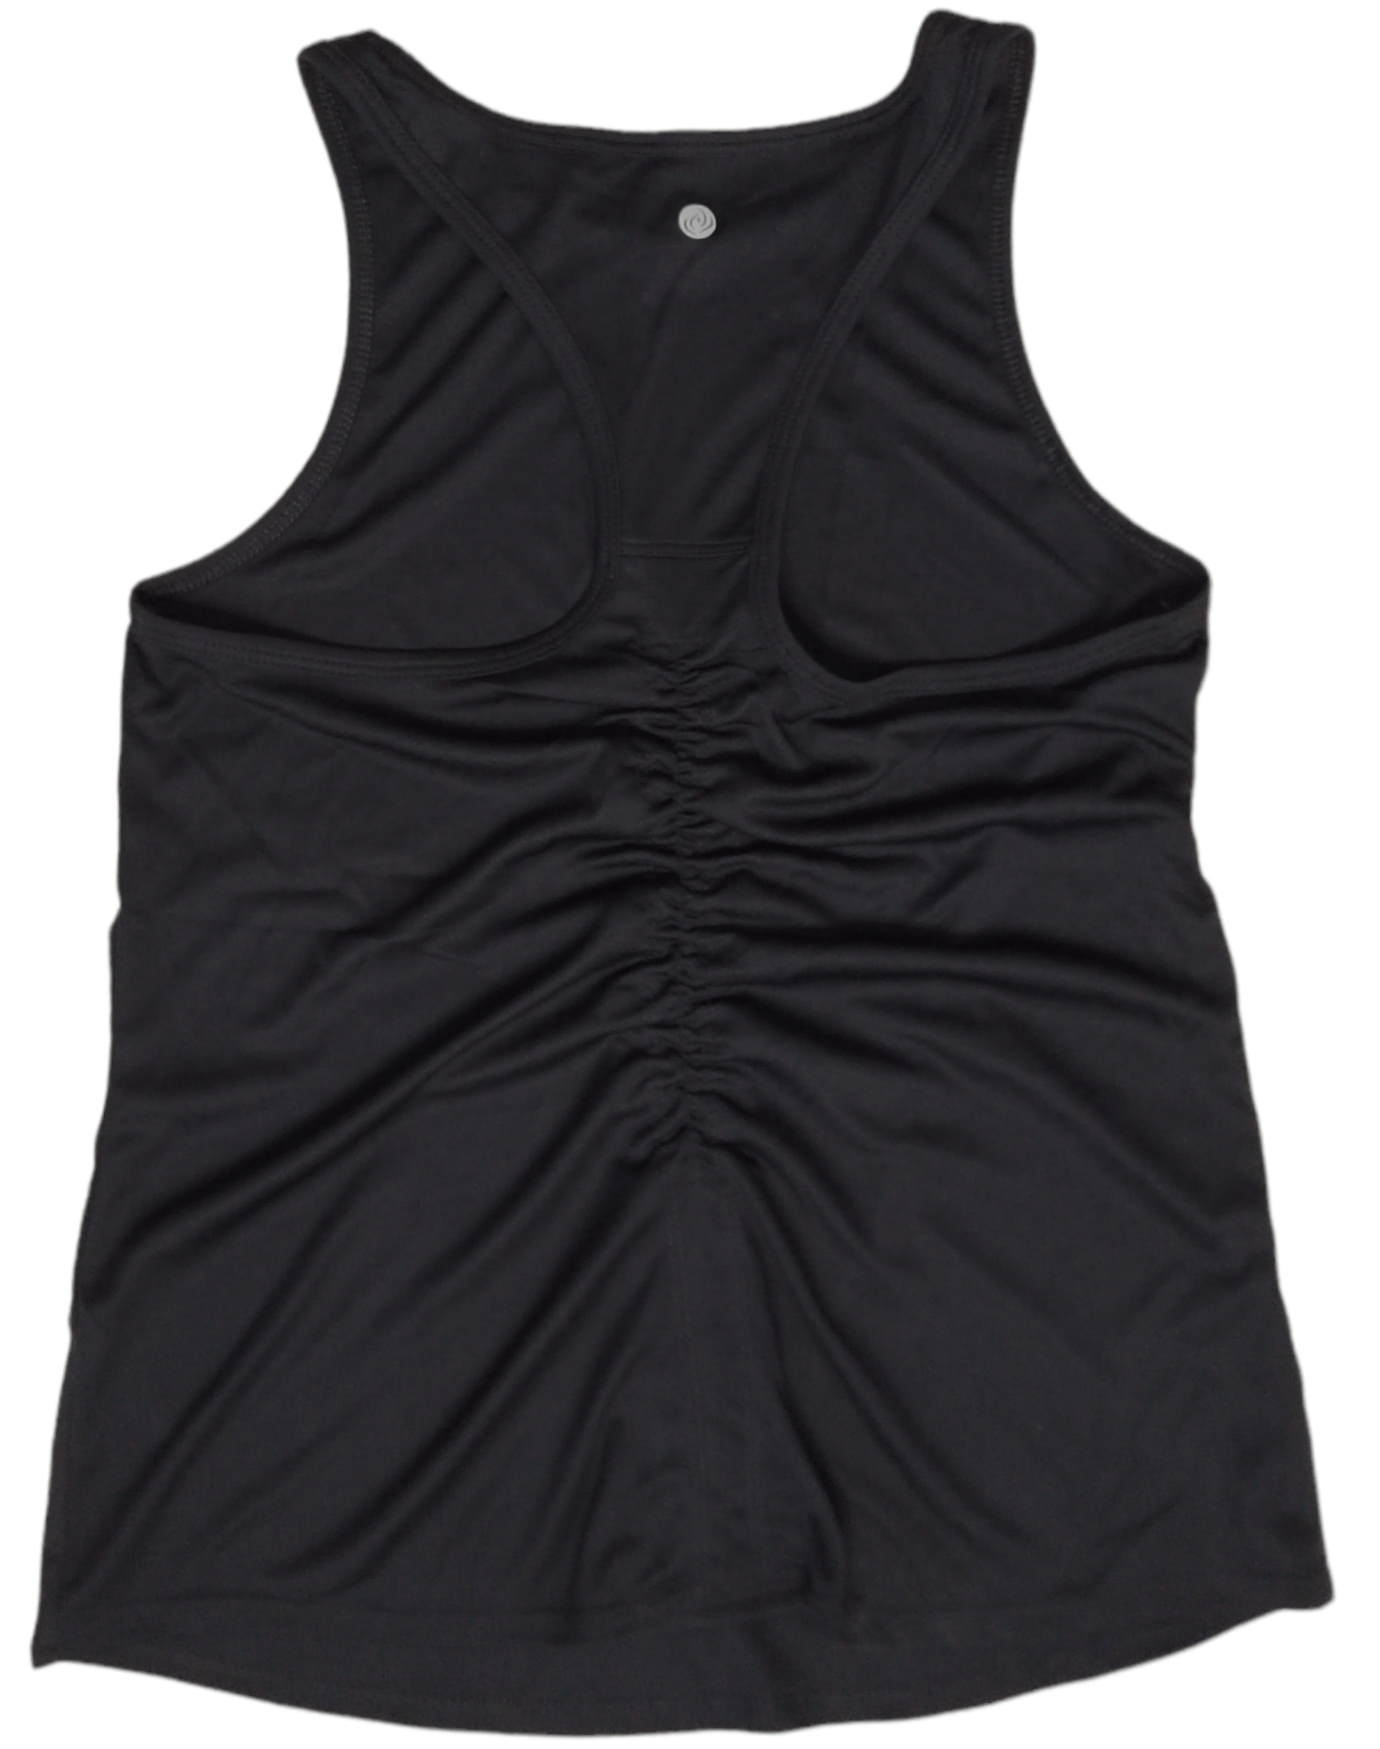 ElOutlet - Summer Women Women T-Shirt Women Sports Body - Black